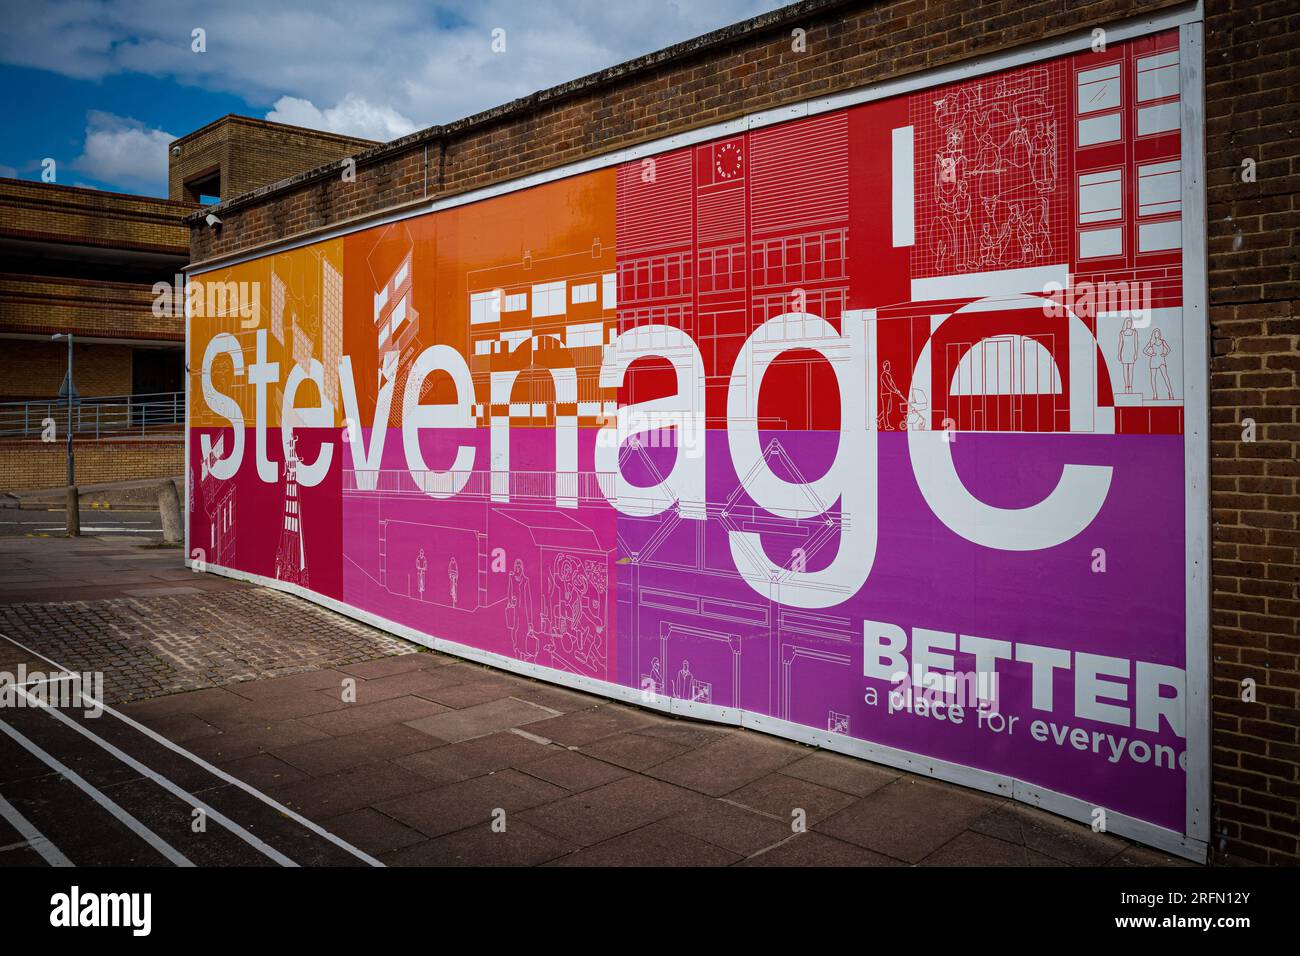 Stevenage e' meglio Un posto per tutti a Stevenage. Programma di rigenerazione da 1 miliardo di sterline guidato da Stevenage Borough Council & Development Board. Foto Stock